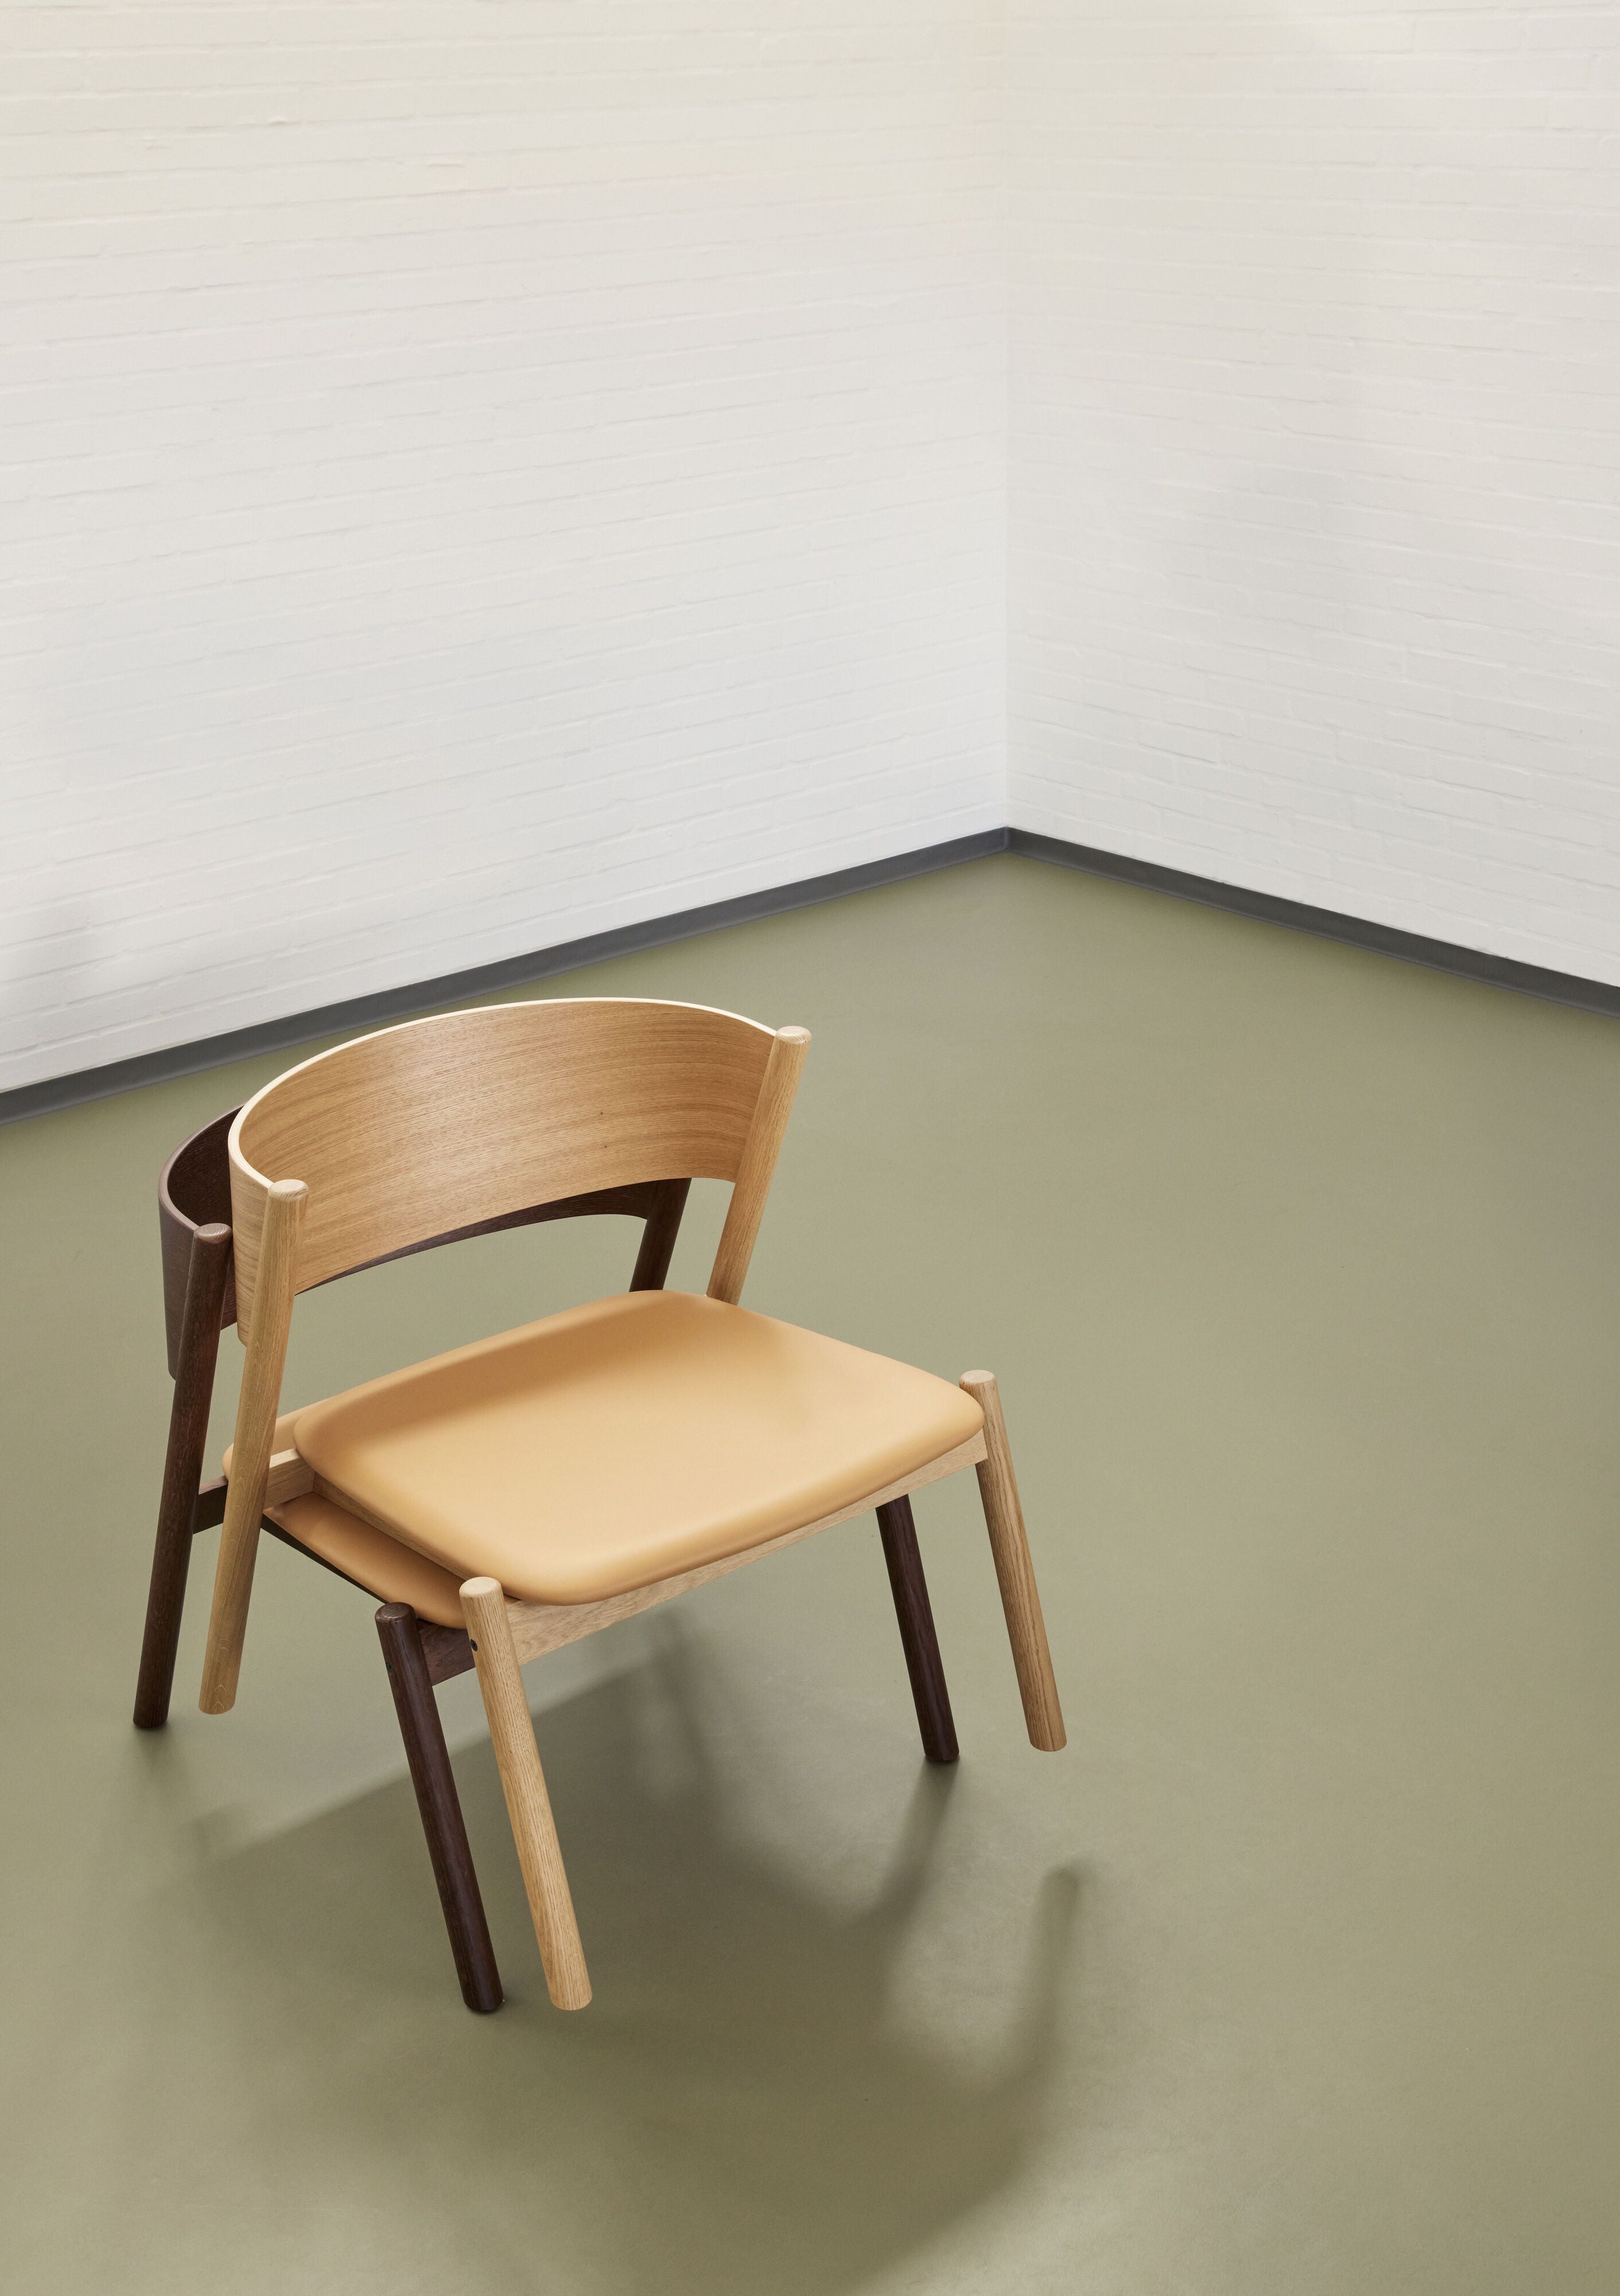 Hübsch ukośne siedzenie krzesła, ciemnobrązowy